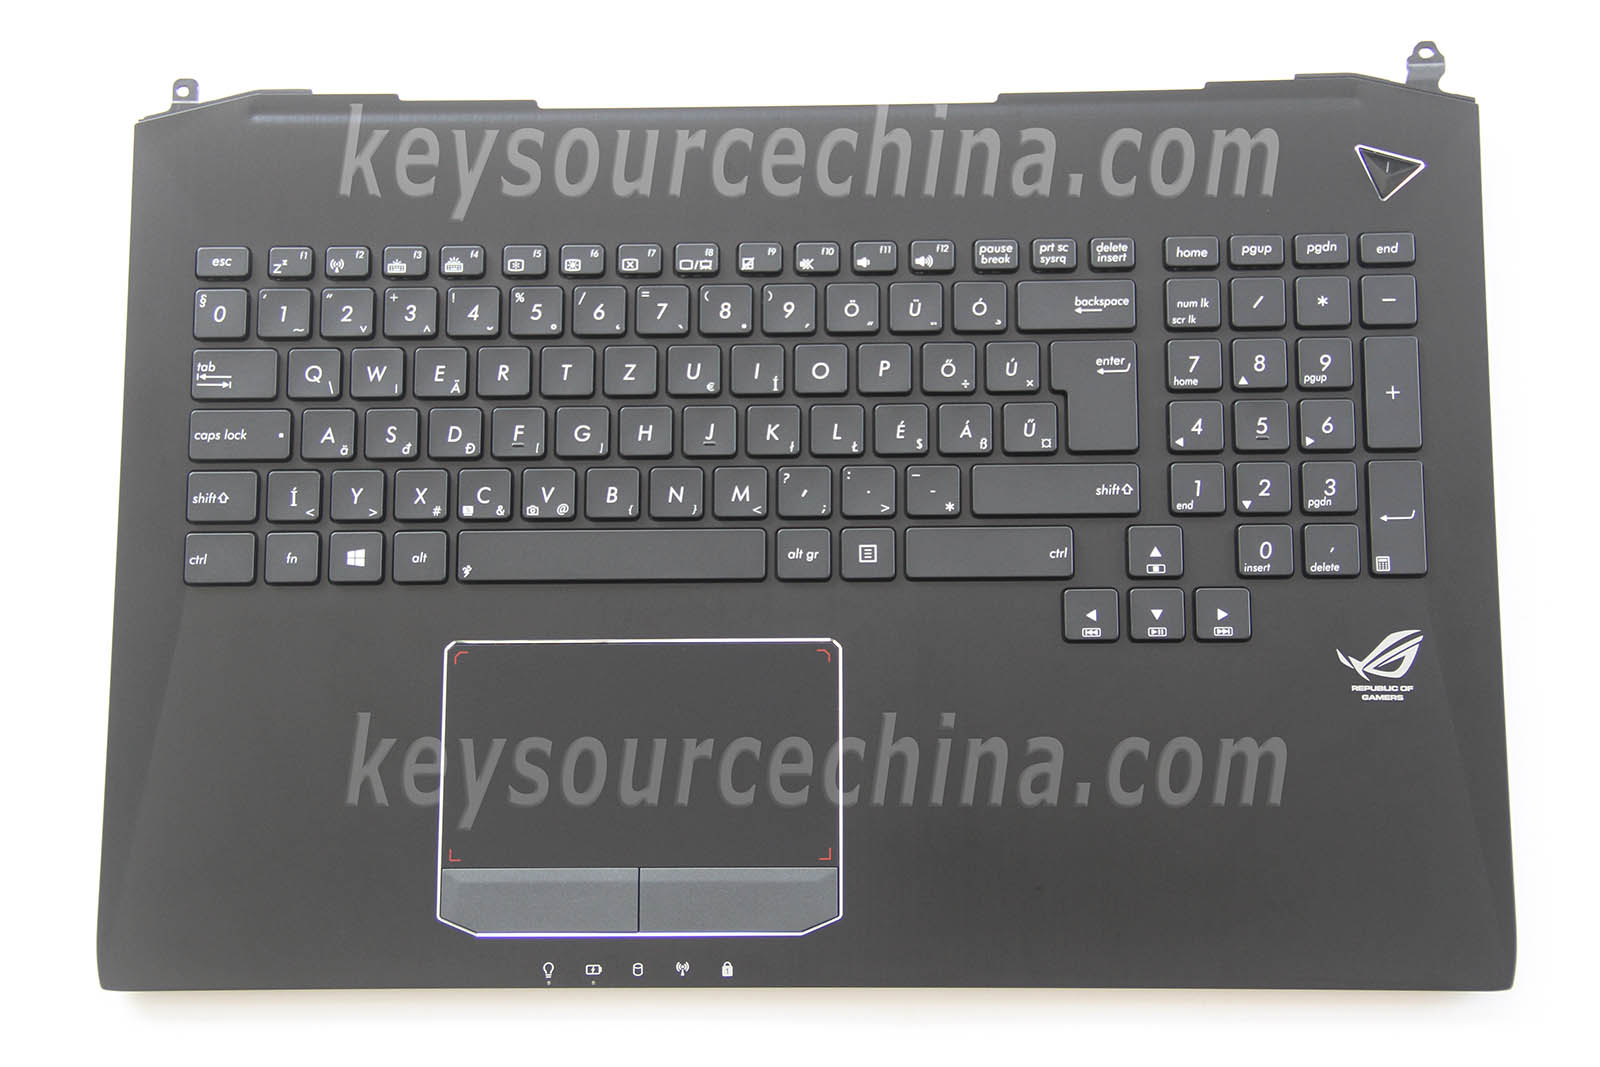 0KN0-P41HU12 Magyar Billentyűzet for Asus ROG G750 G750J G750JM G750JH G750JS G750JW G750JX Keyboard Hungaian Backlit Top case